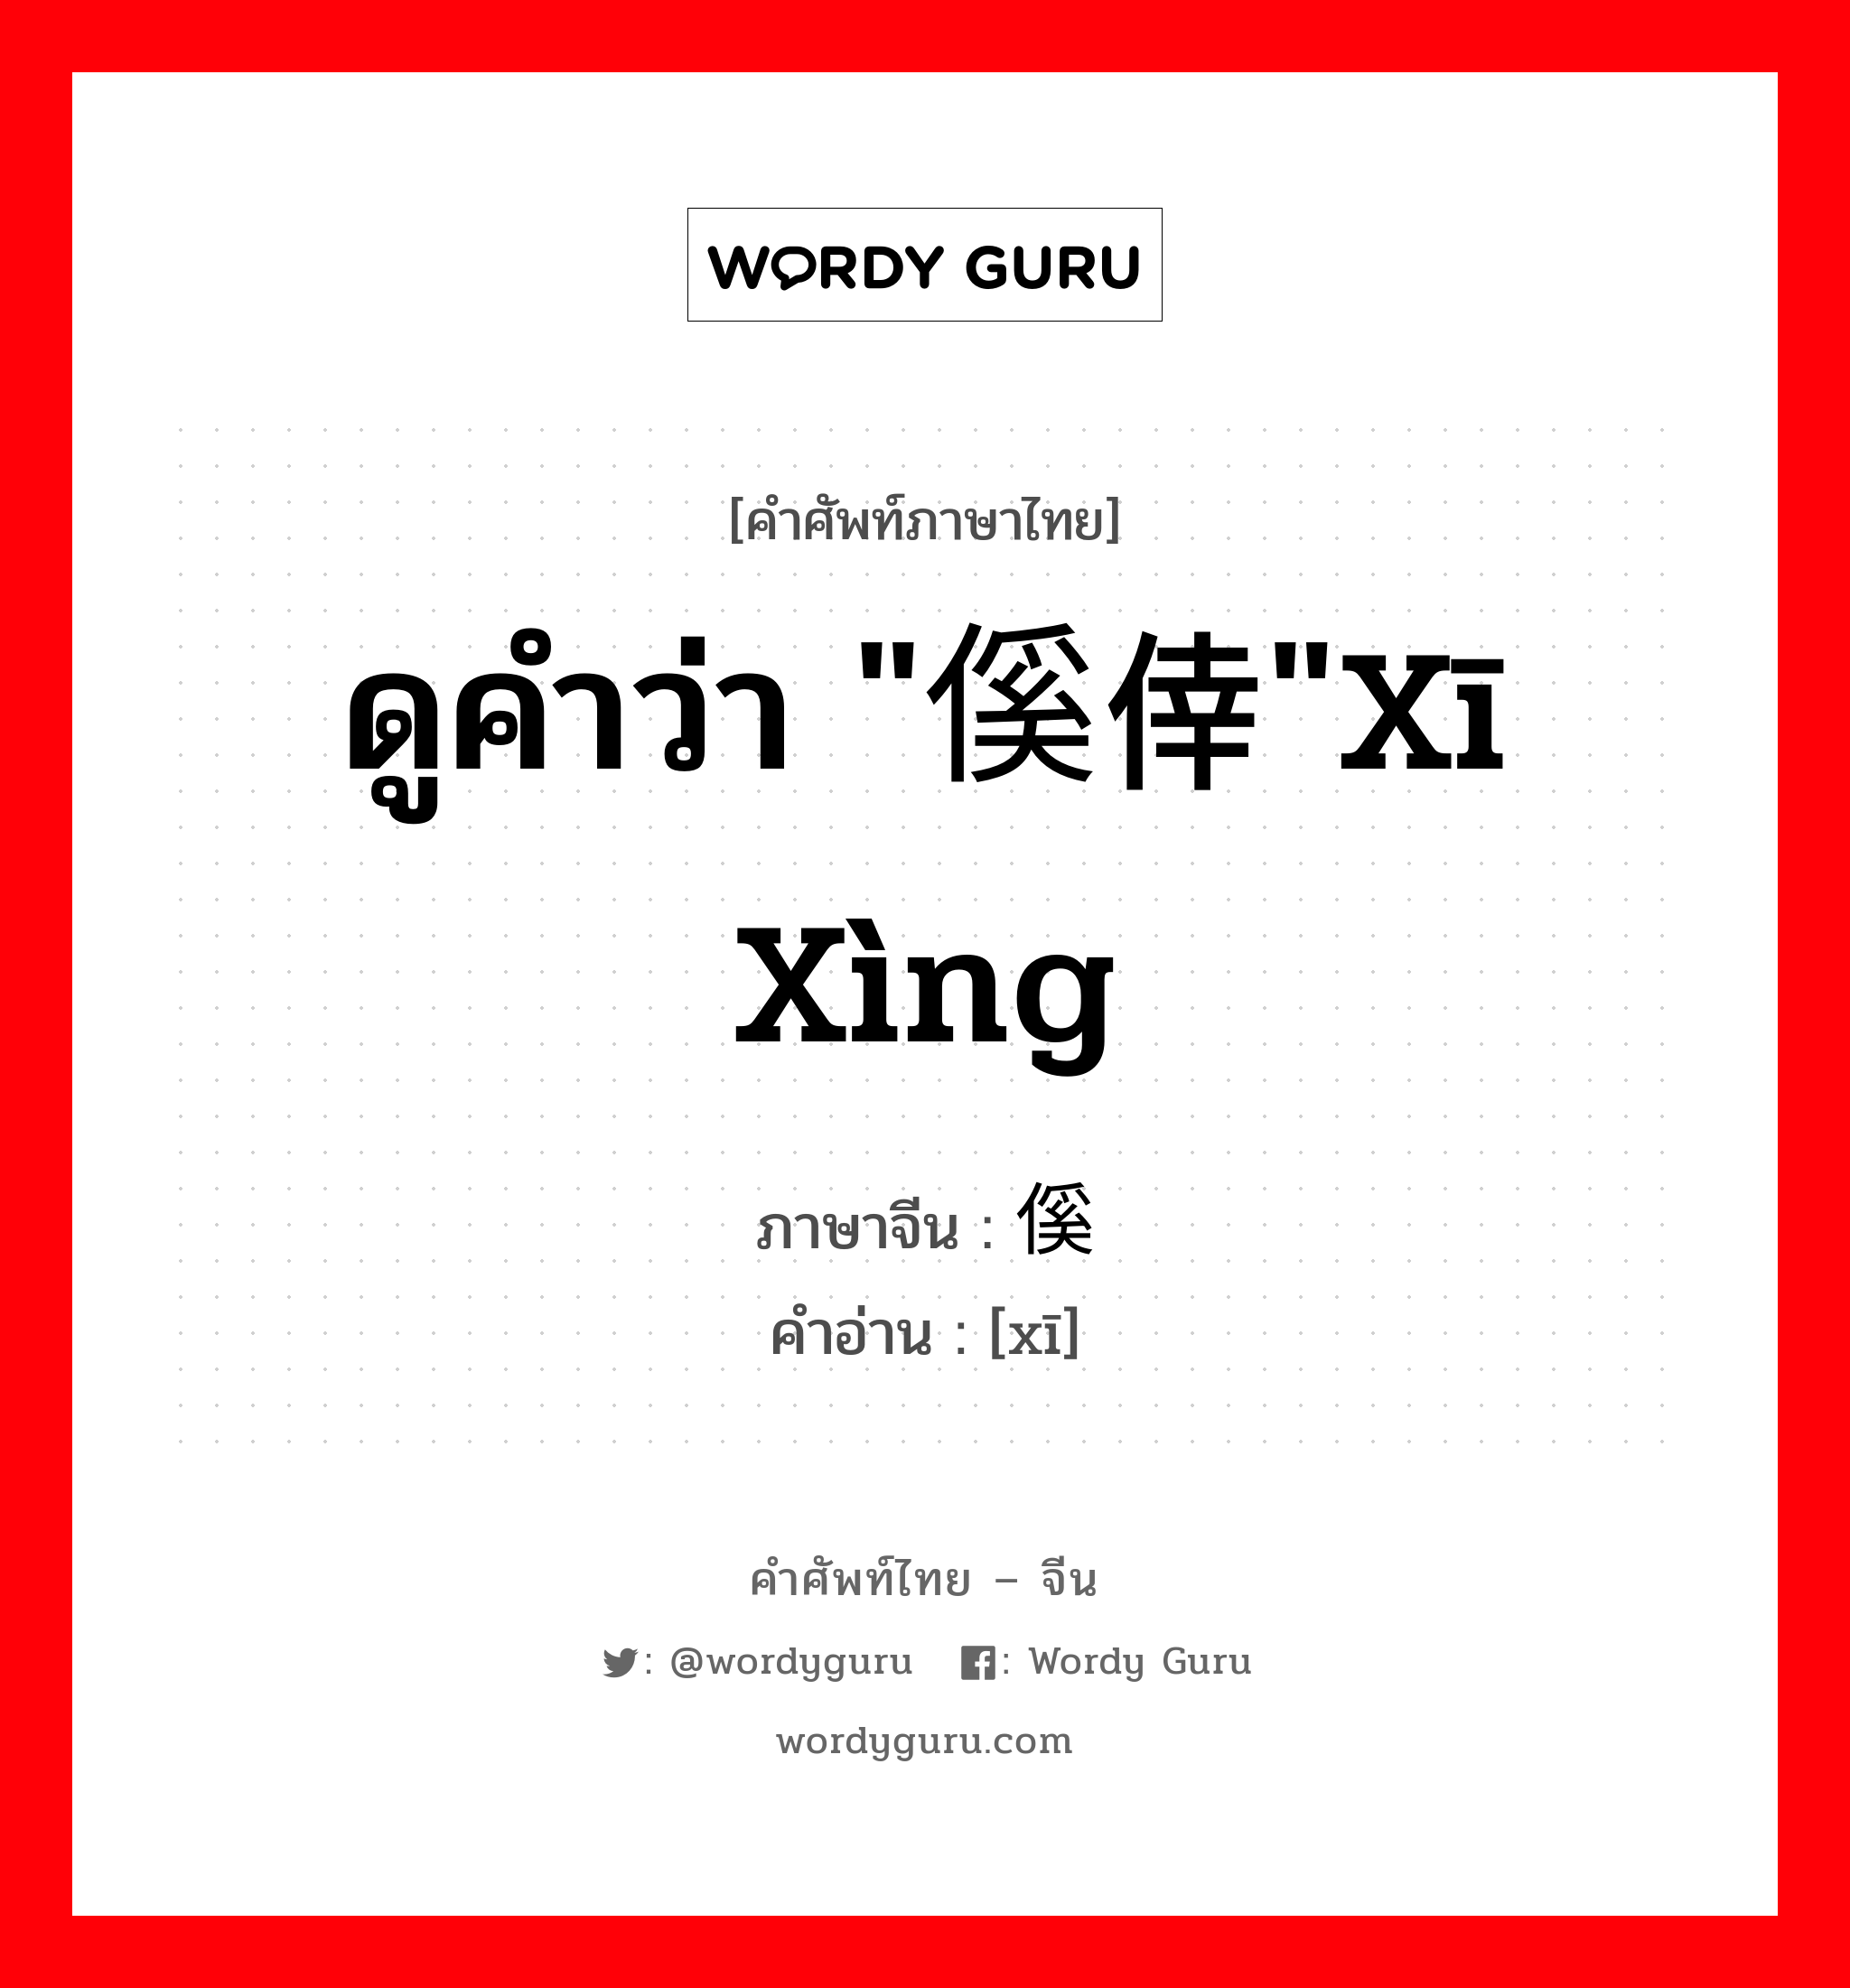 ดูคำว่า "傒倖"xī xìng ภาษาจีนคืออะไร, คำศัพท์ภาษาไทย - จีน ดูคำว่า "傒倖"xī xìng ภาษาจีน 傒 คำอ่าน [xī]